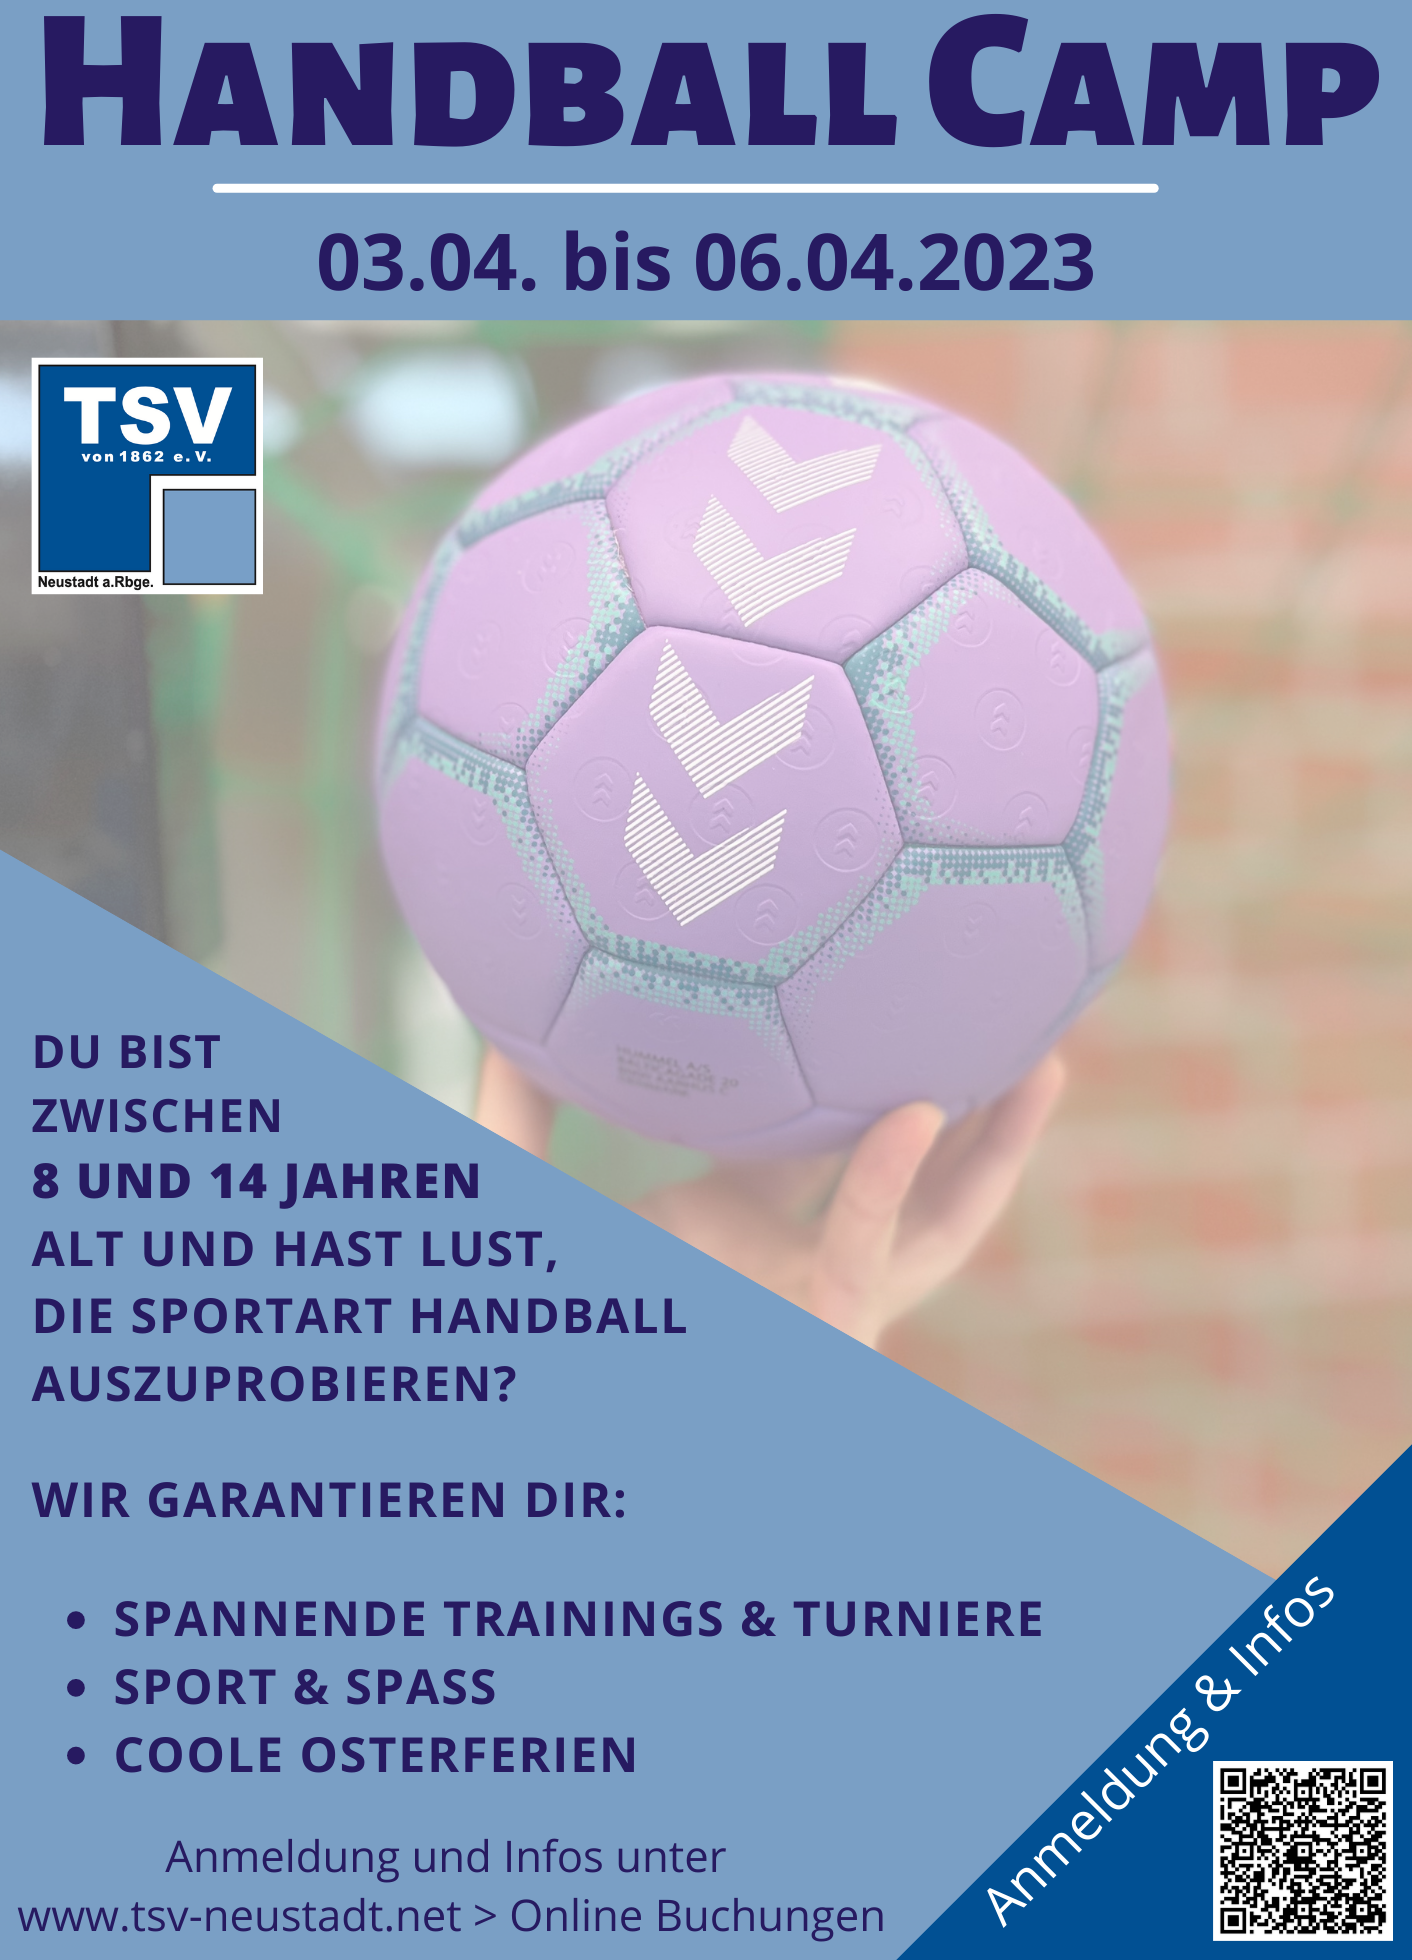 TSV Handball Camp 2023